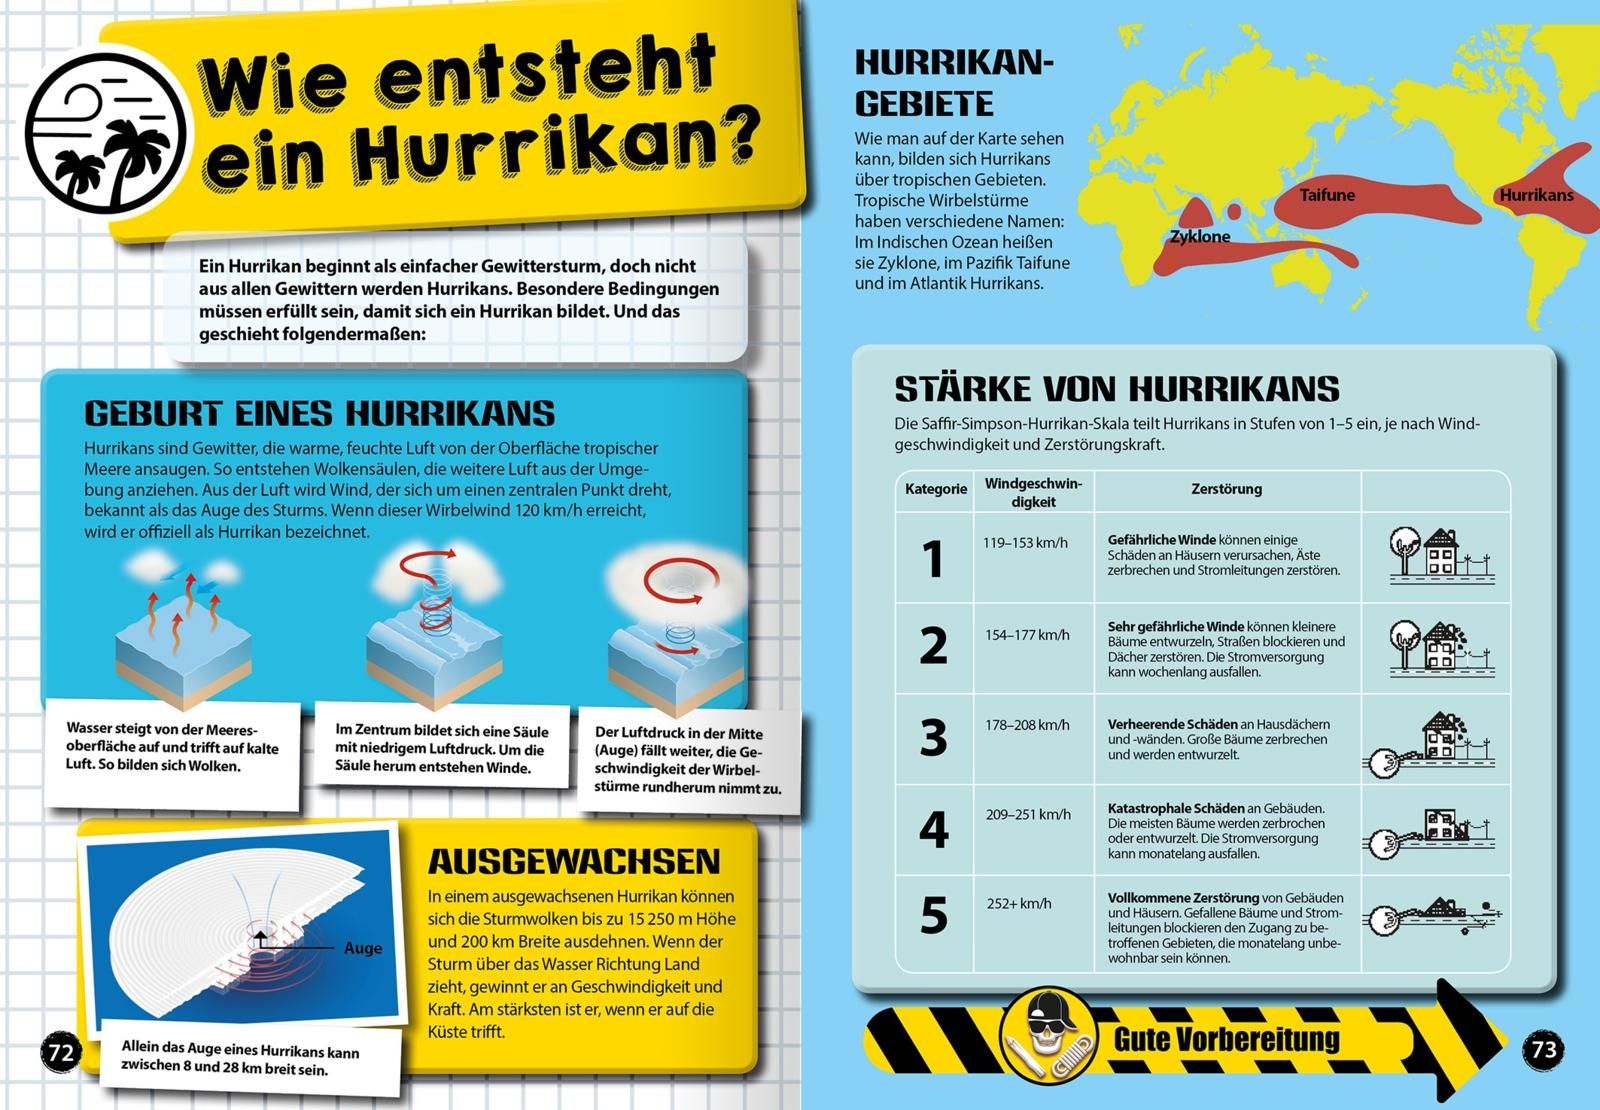 Survival-Handbuch Naturkatastrophen